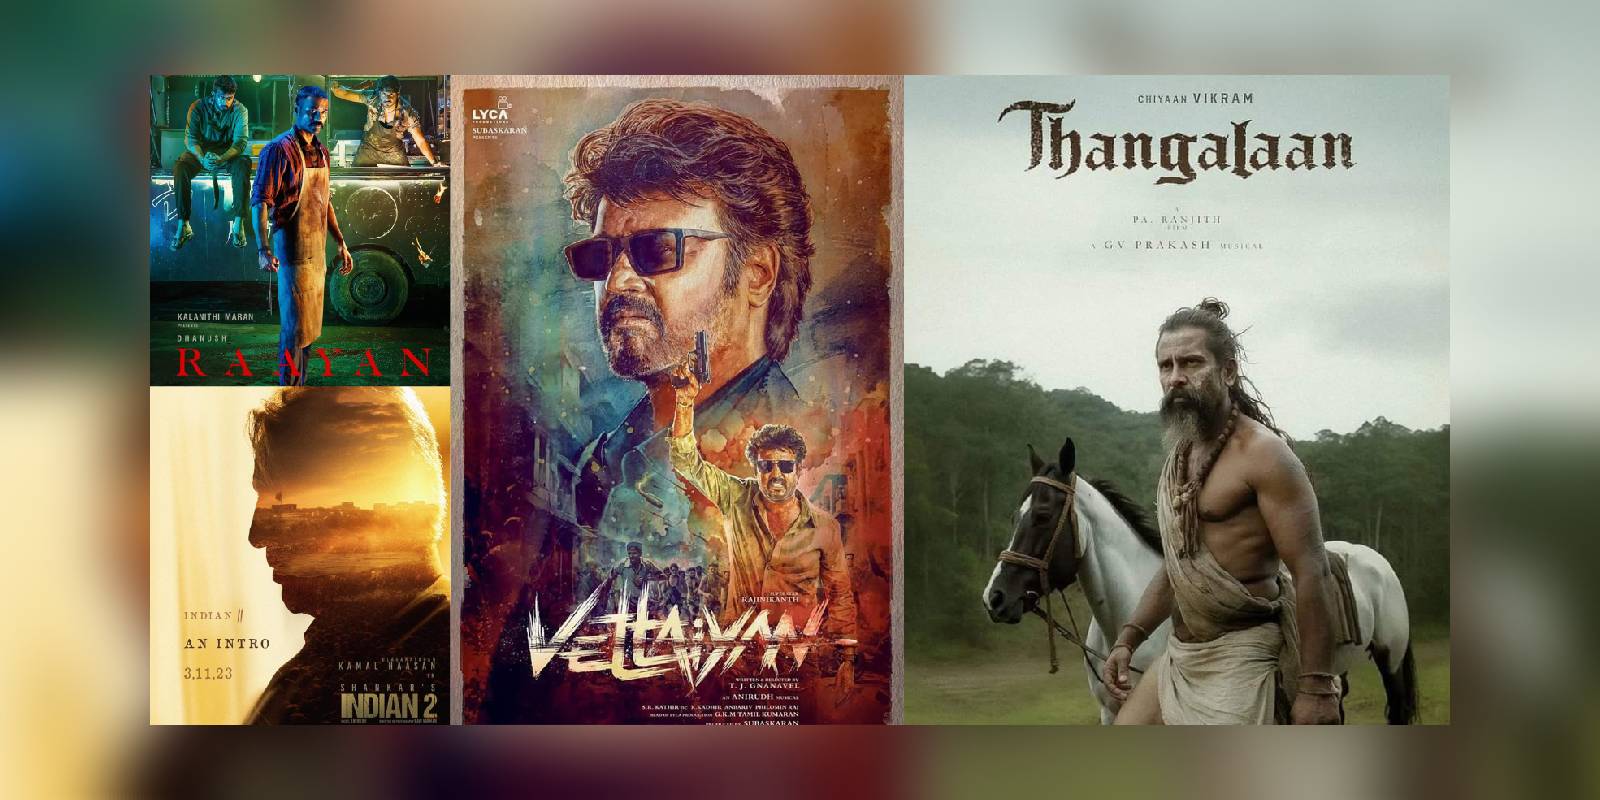 No big-budget Tamil films releasing this festive season